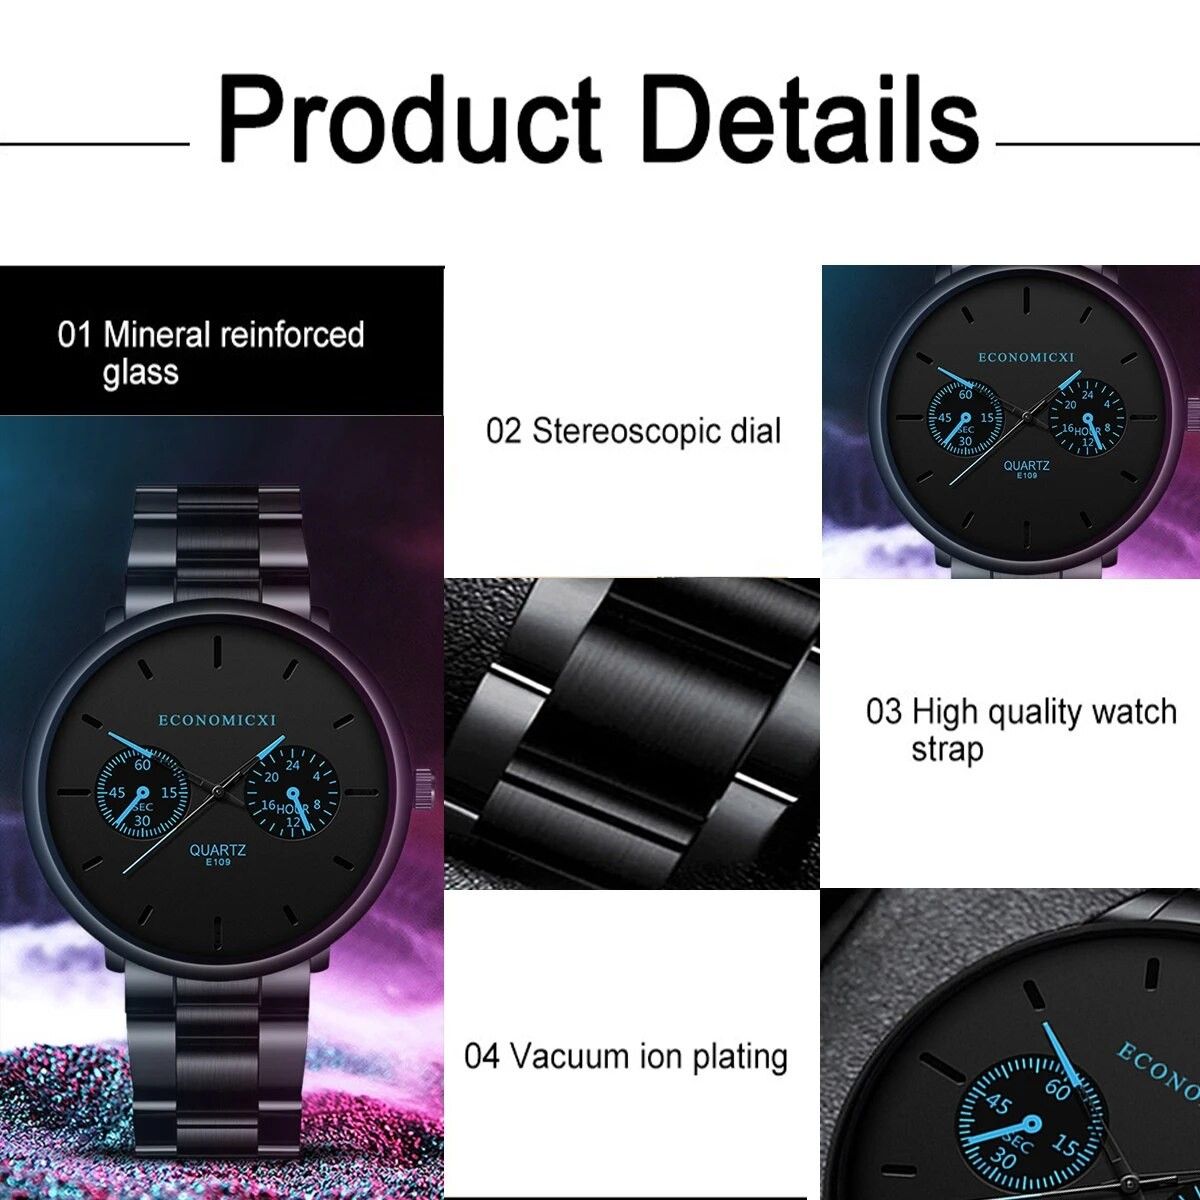 メンズ腕時計 新品未使用 アナログ 薄型 腕時計 E109 ウォッチ ミニマリスト クォーツ ALLブラック